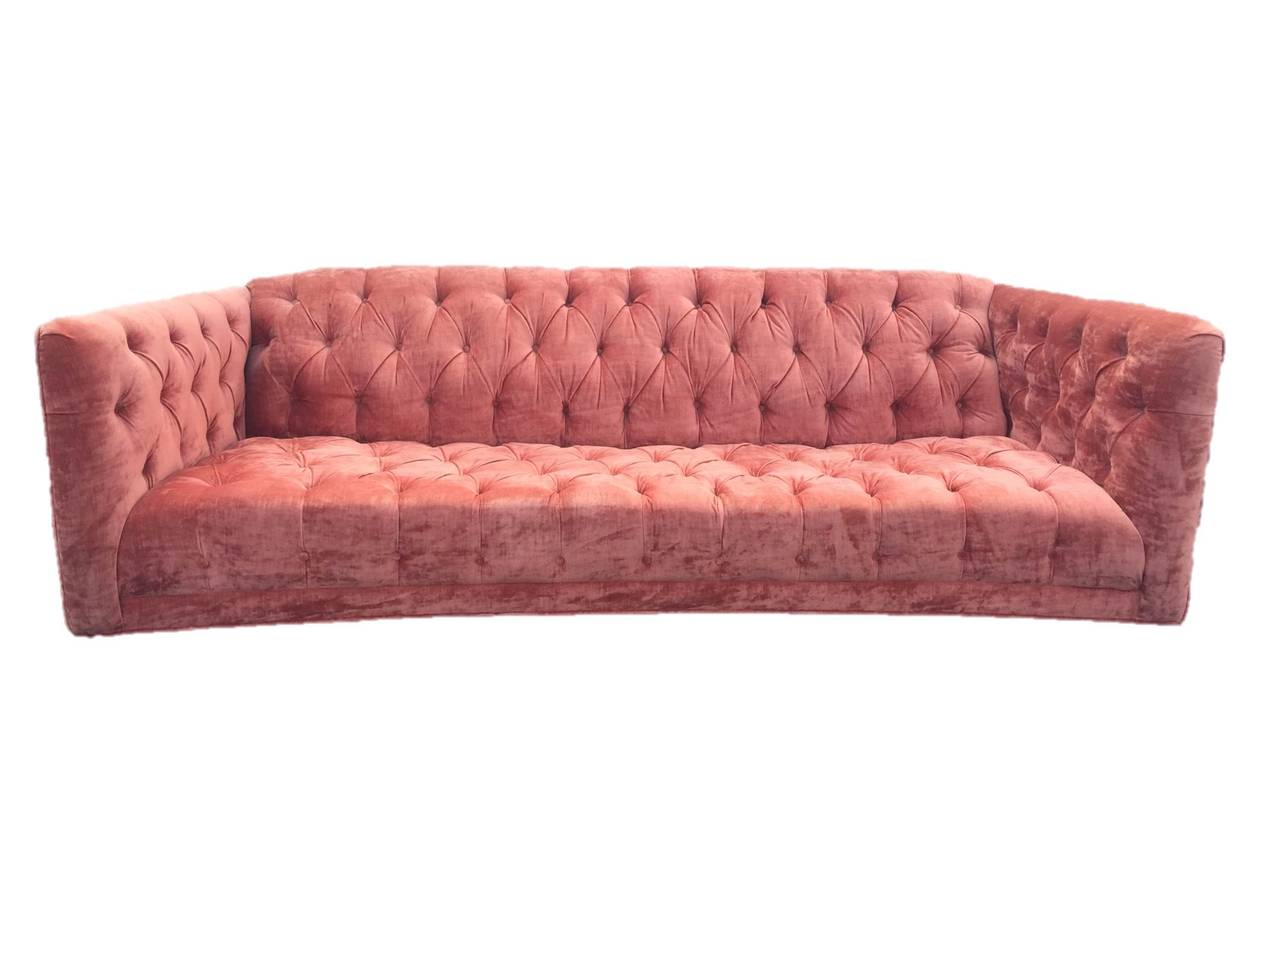 exquisite sofas